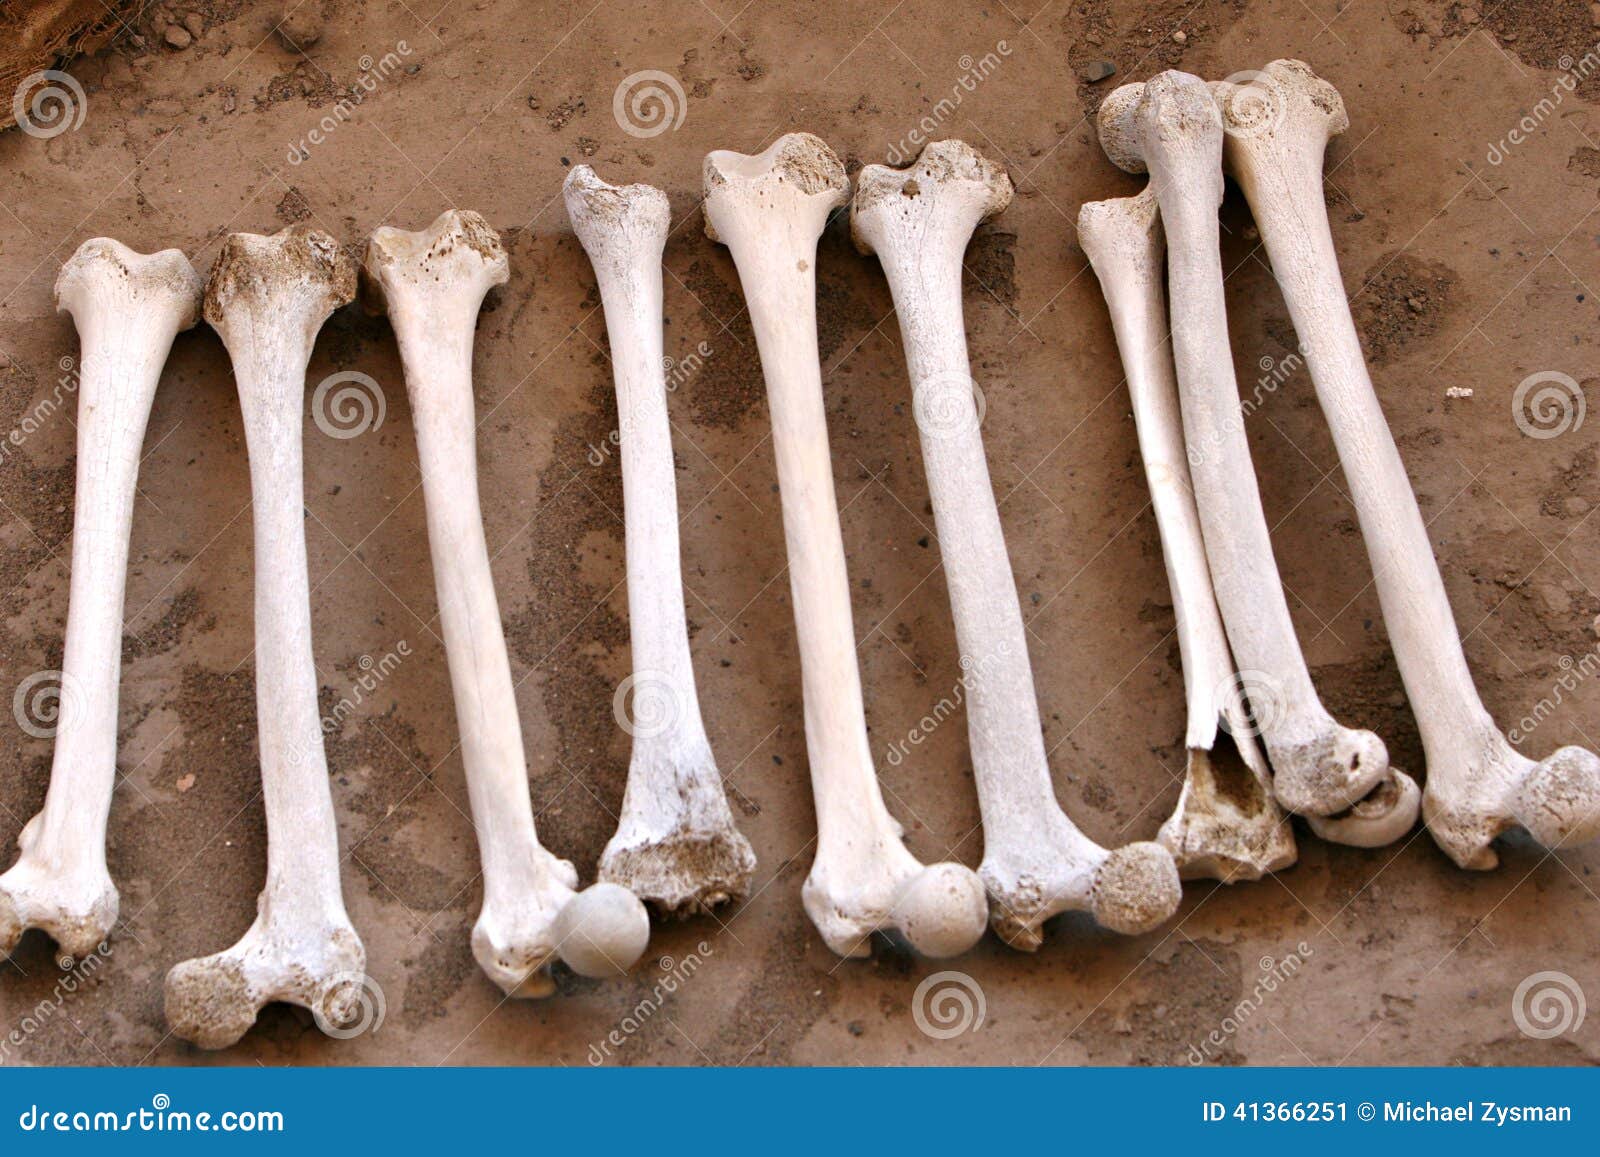 ancient human bones